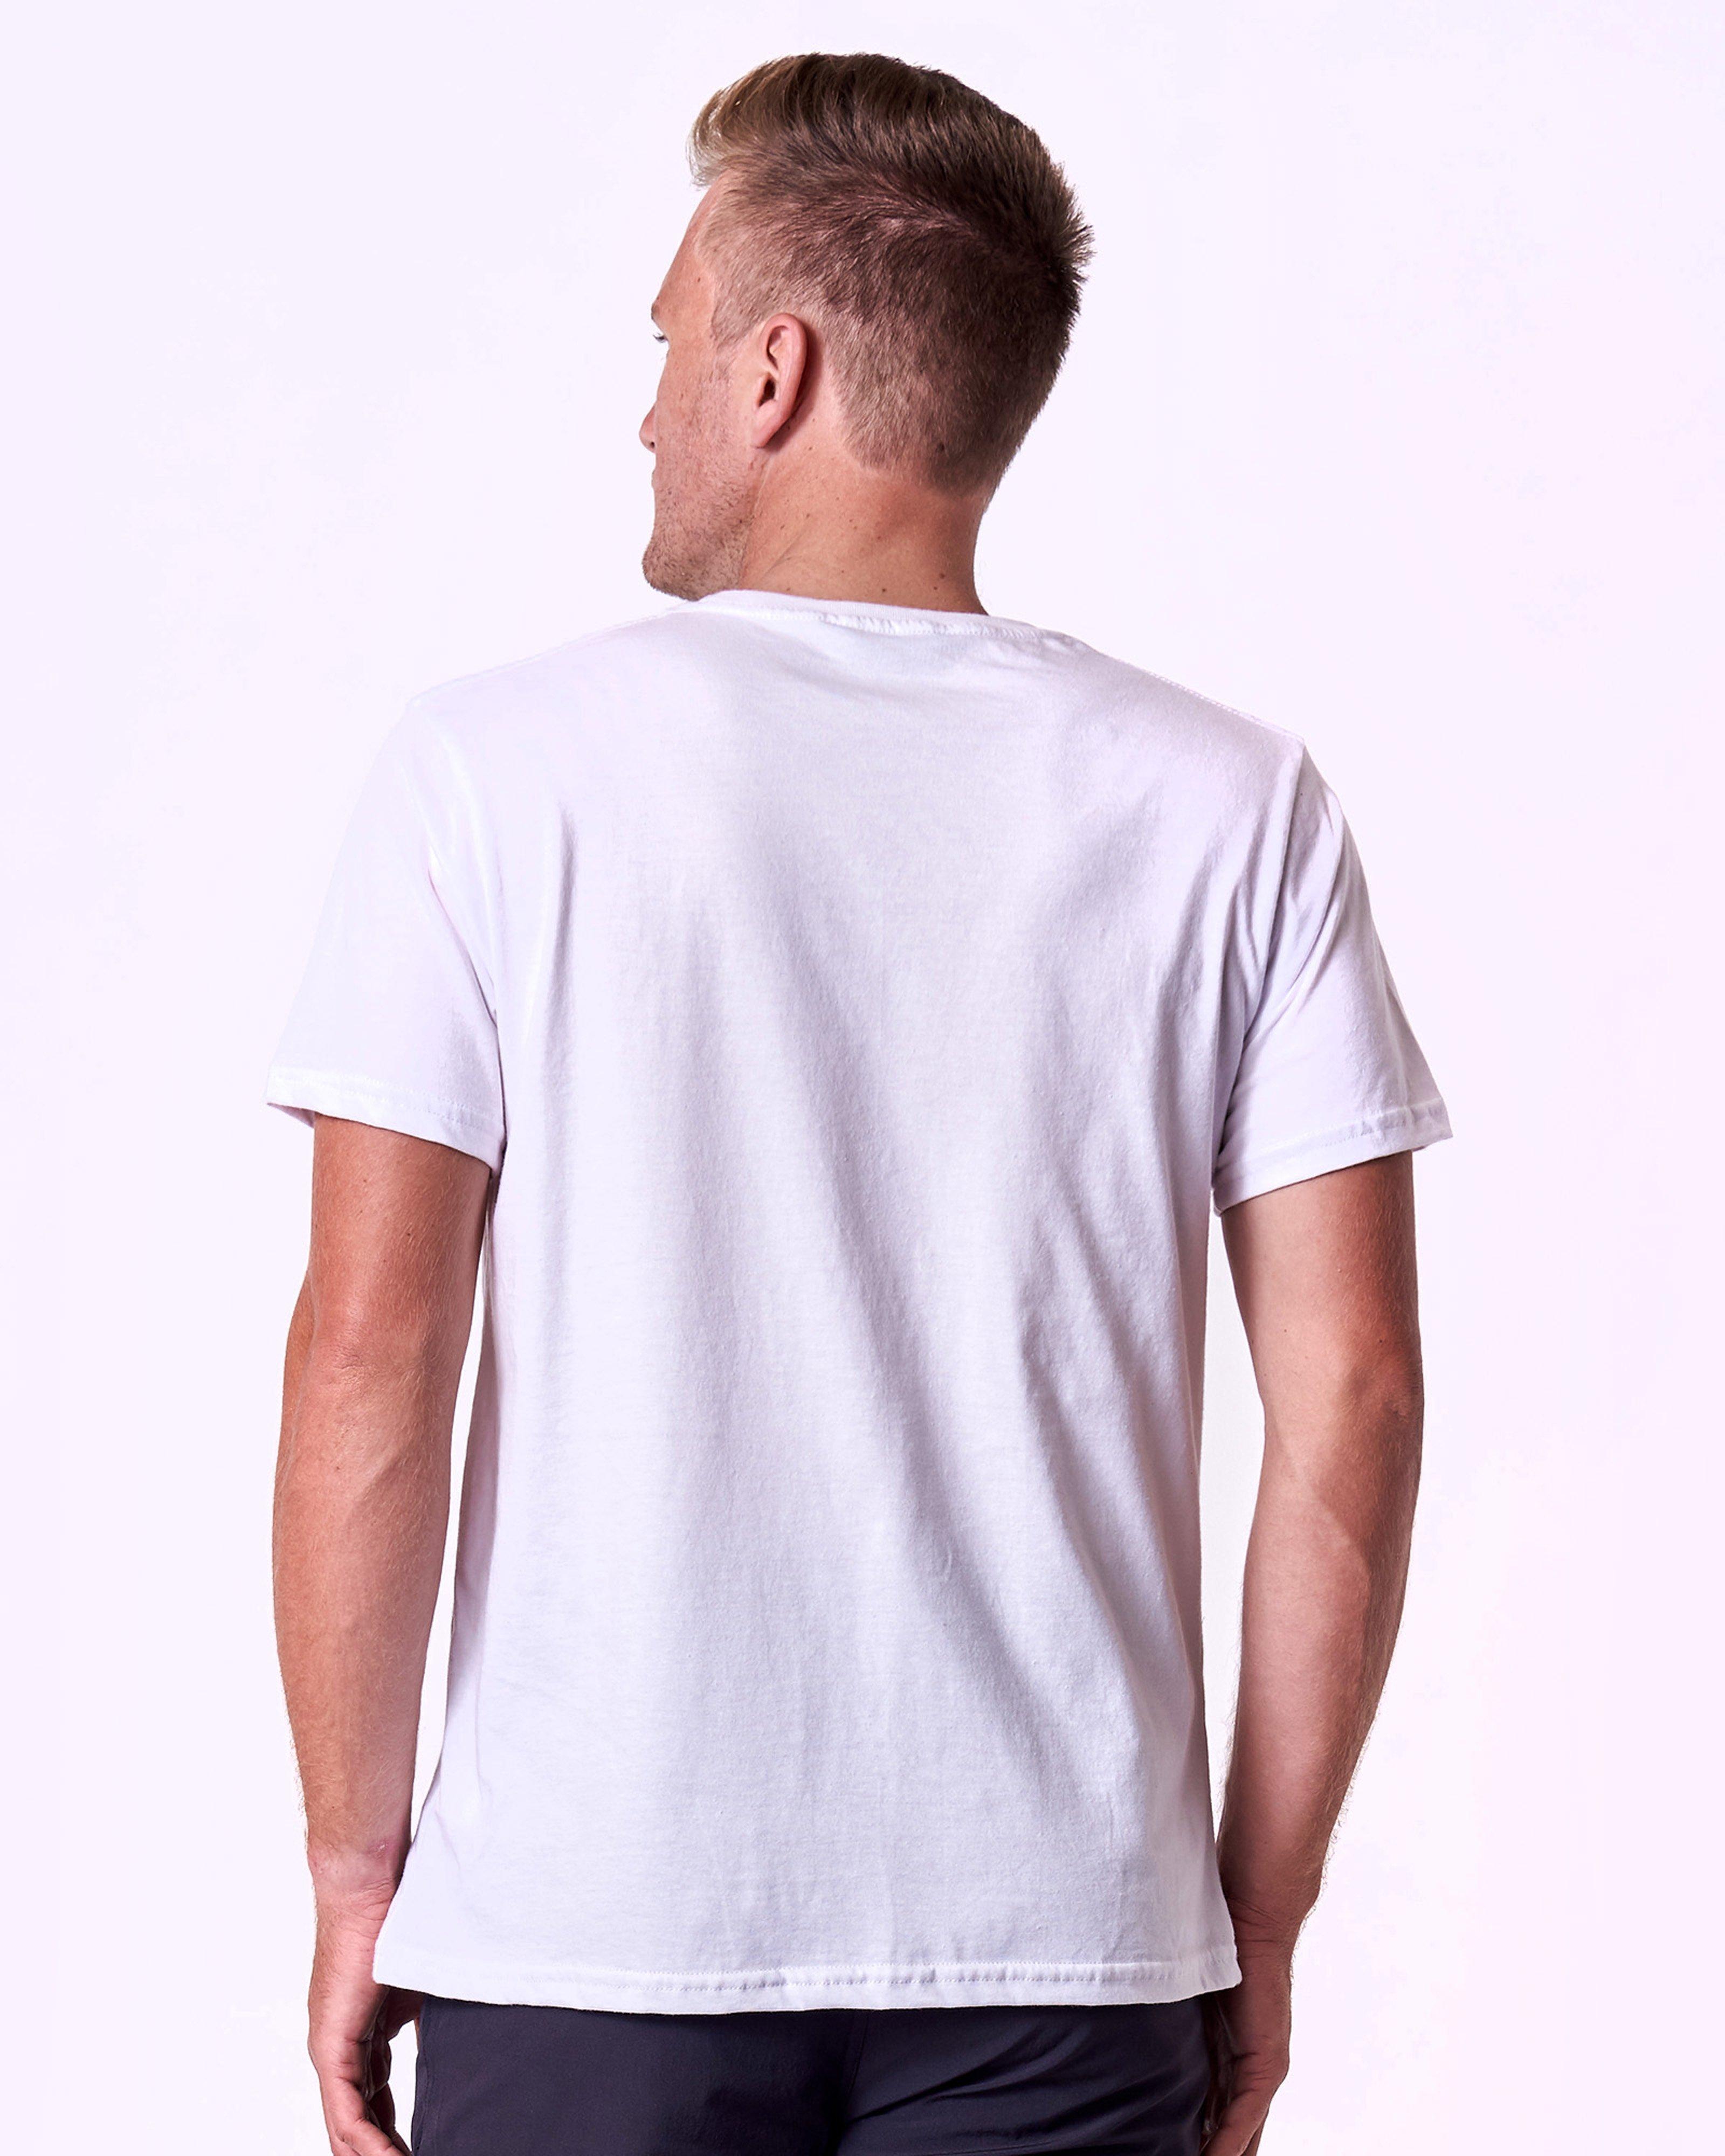 Salomon Men's Lenin T-shirt -  White